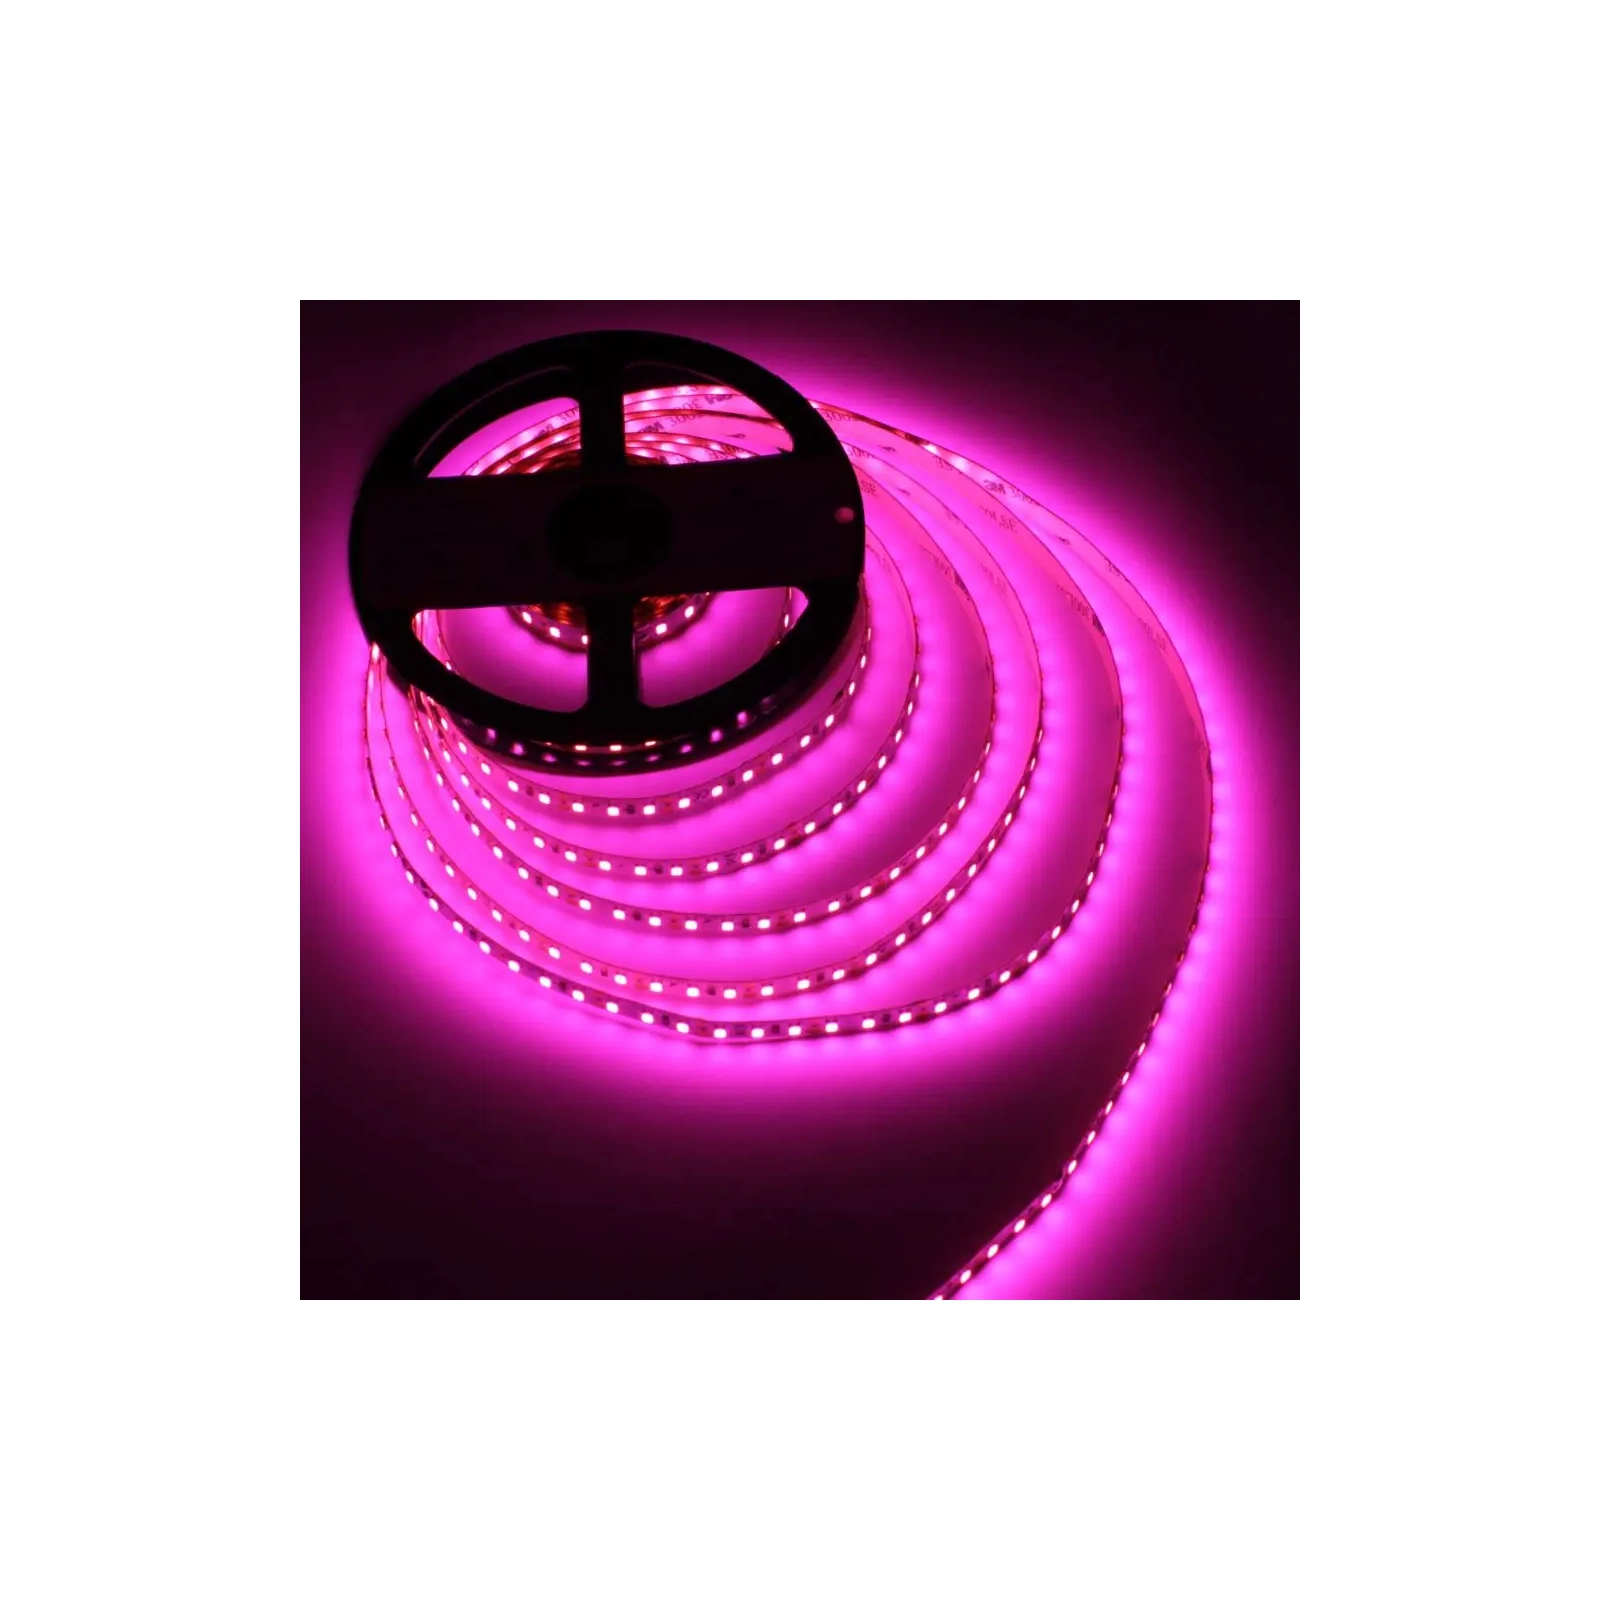 Светодиодная лента LED-STIL 9,6 Вт/м 2835 120 диодов IP33 12 Вольт 100 lm Розовый цвет свечения (DFN2835-120A-IP33-P)